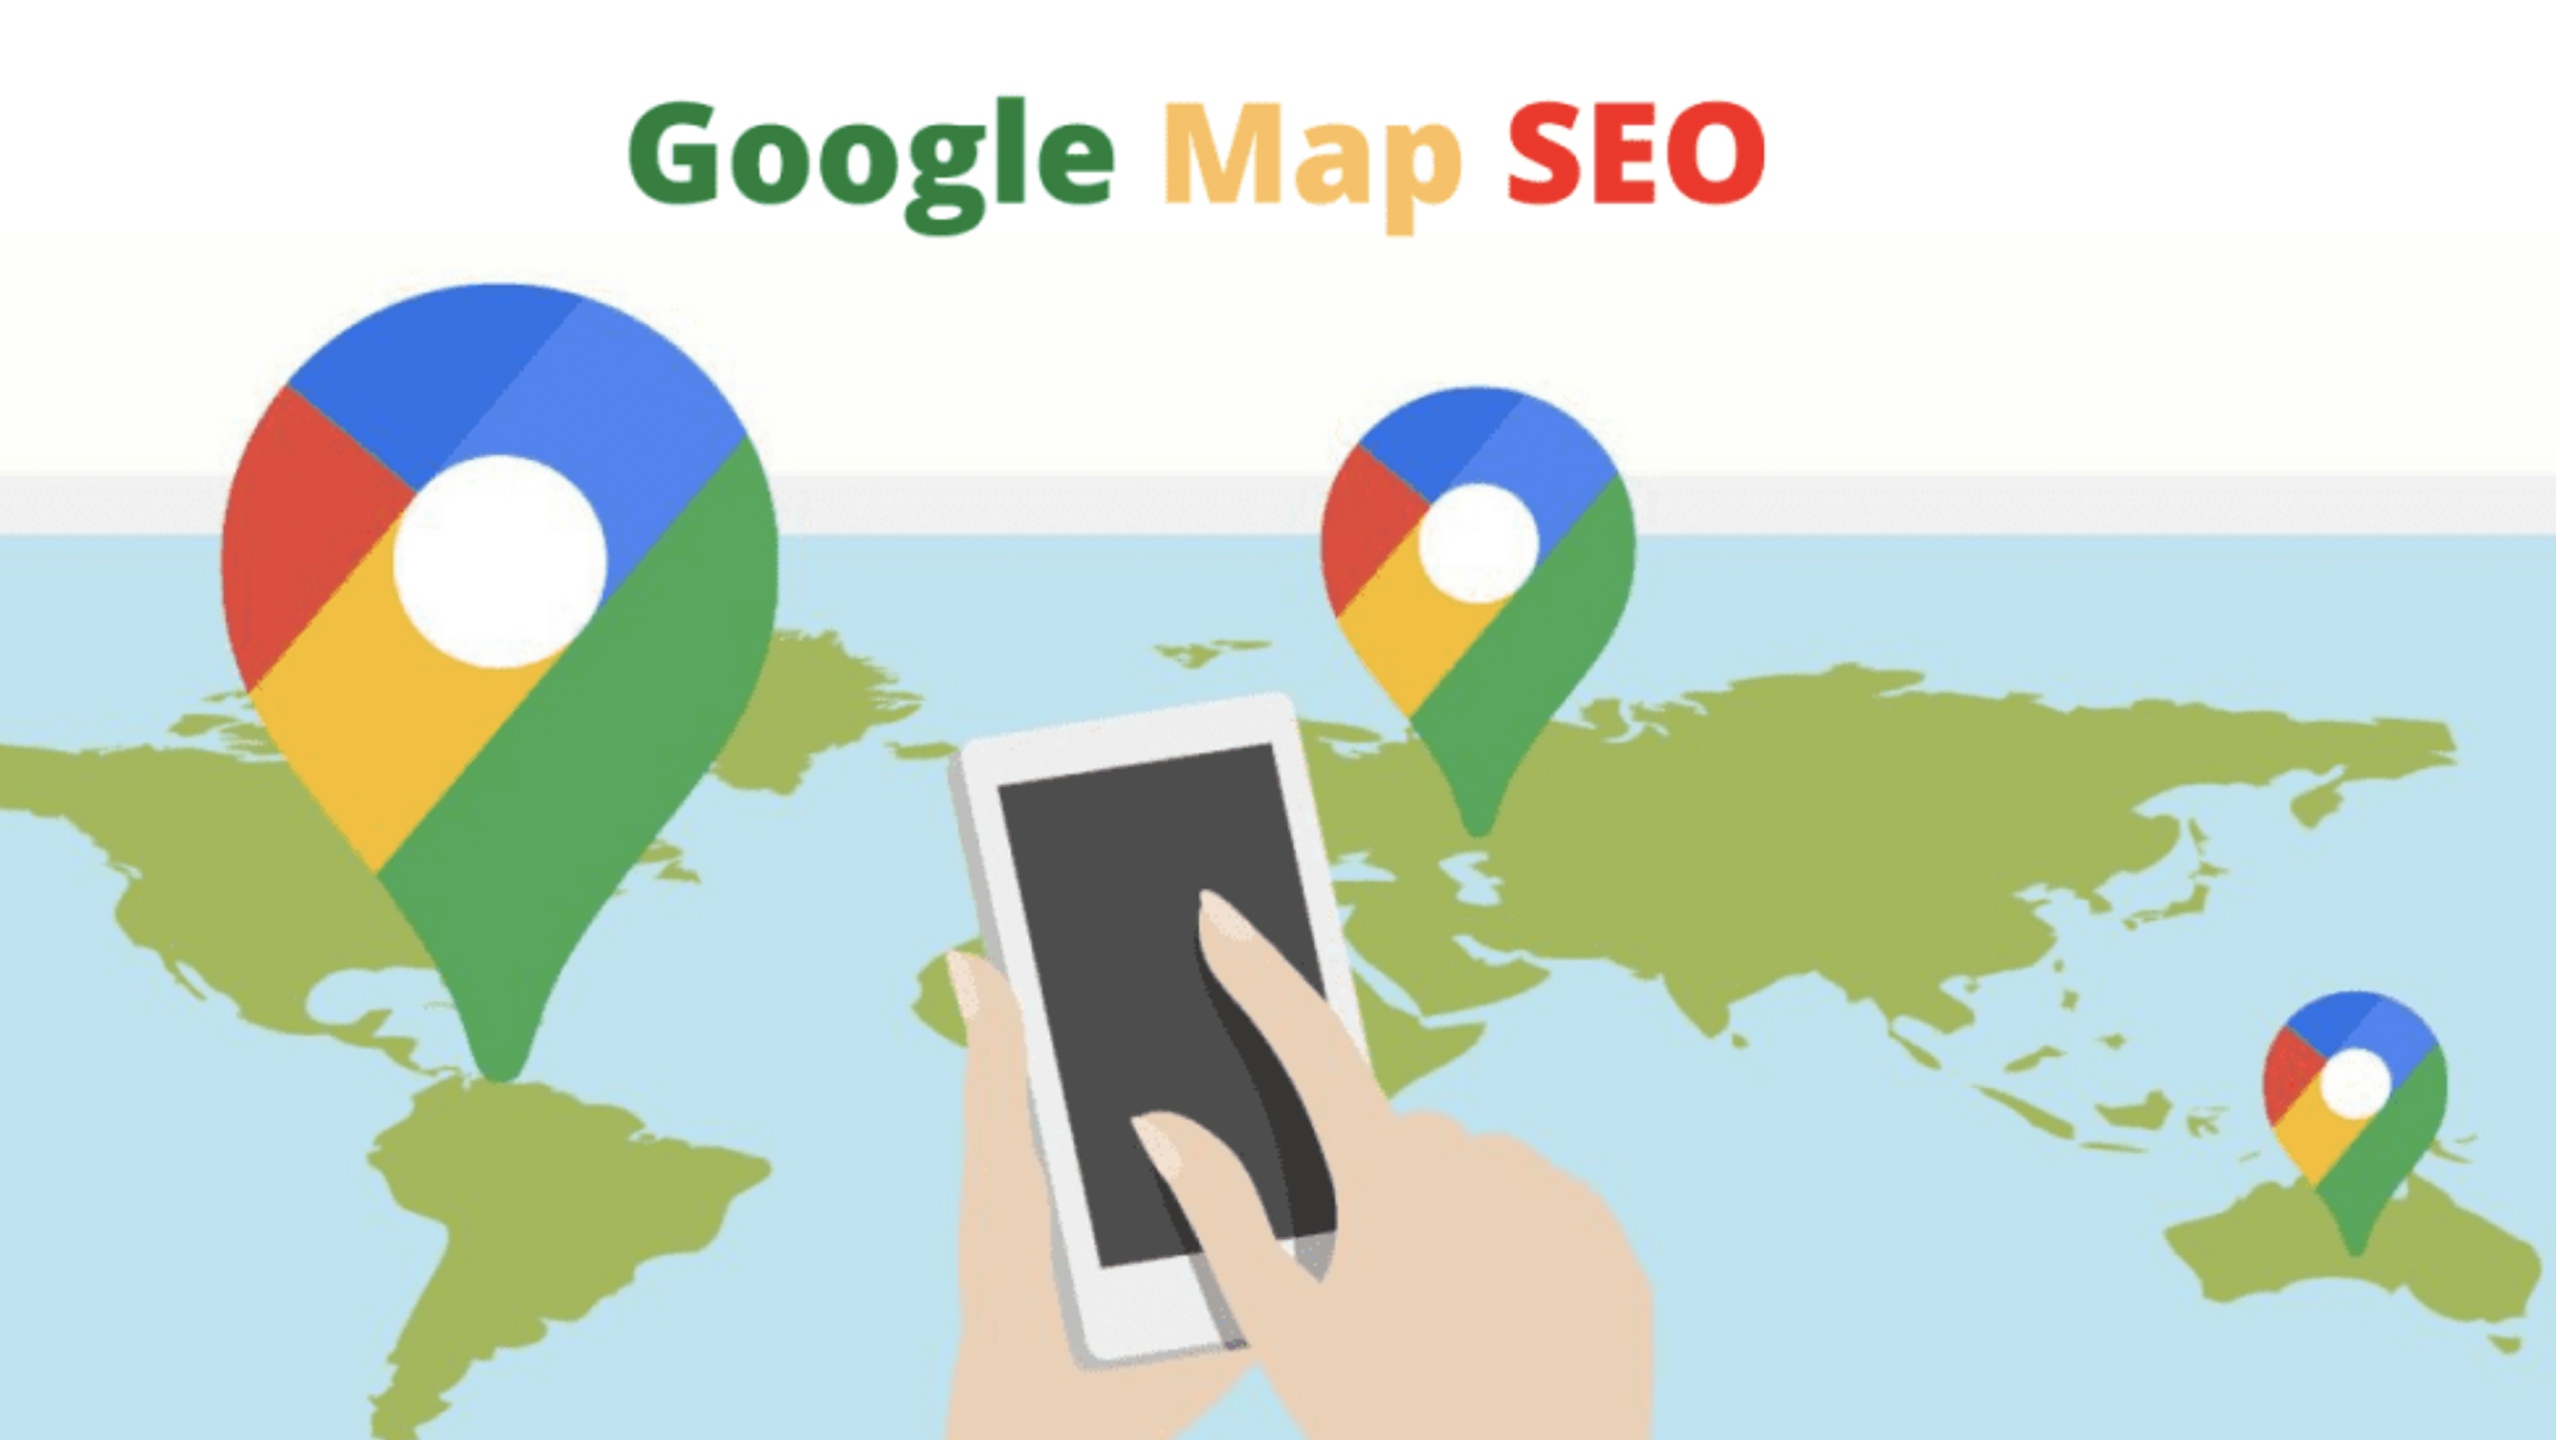 SEO Google Maps là một chiến lược tối ưu hóa công cụ tìm kiếm được áp dụng để cải thiện vị trí hiển thị của một doanh nghiệp trên Google Maps.